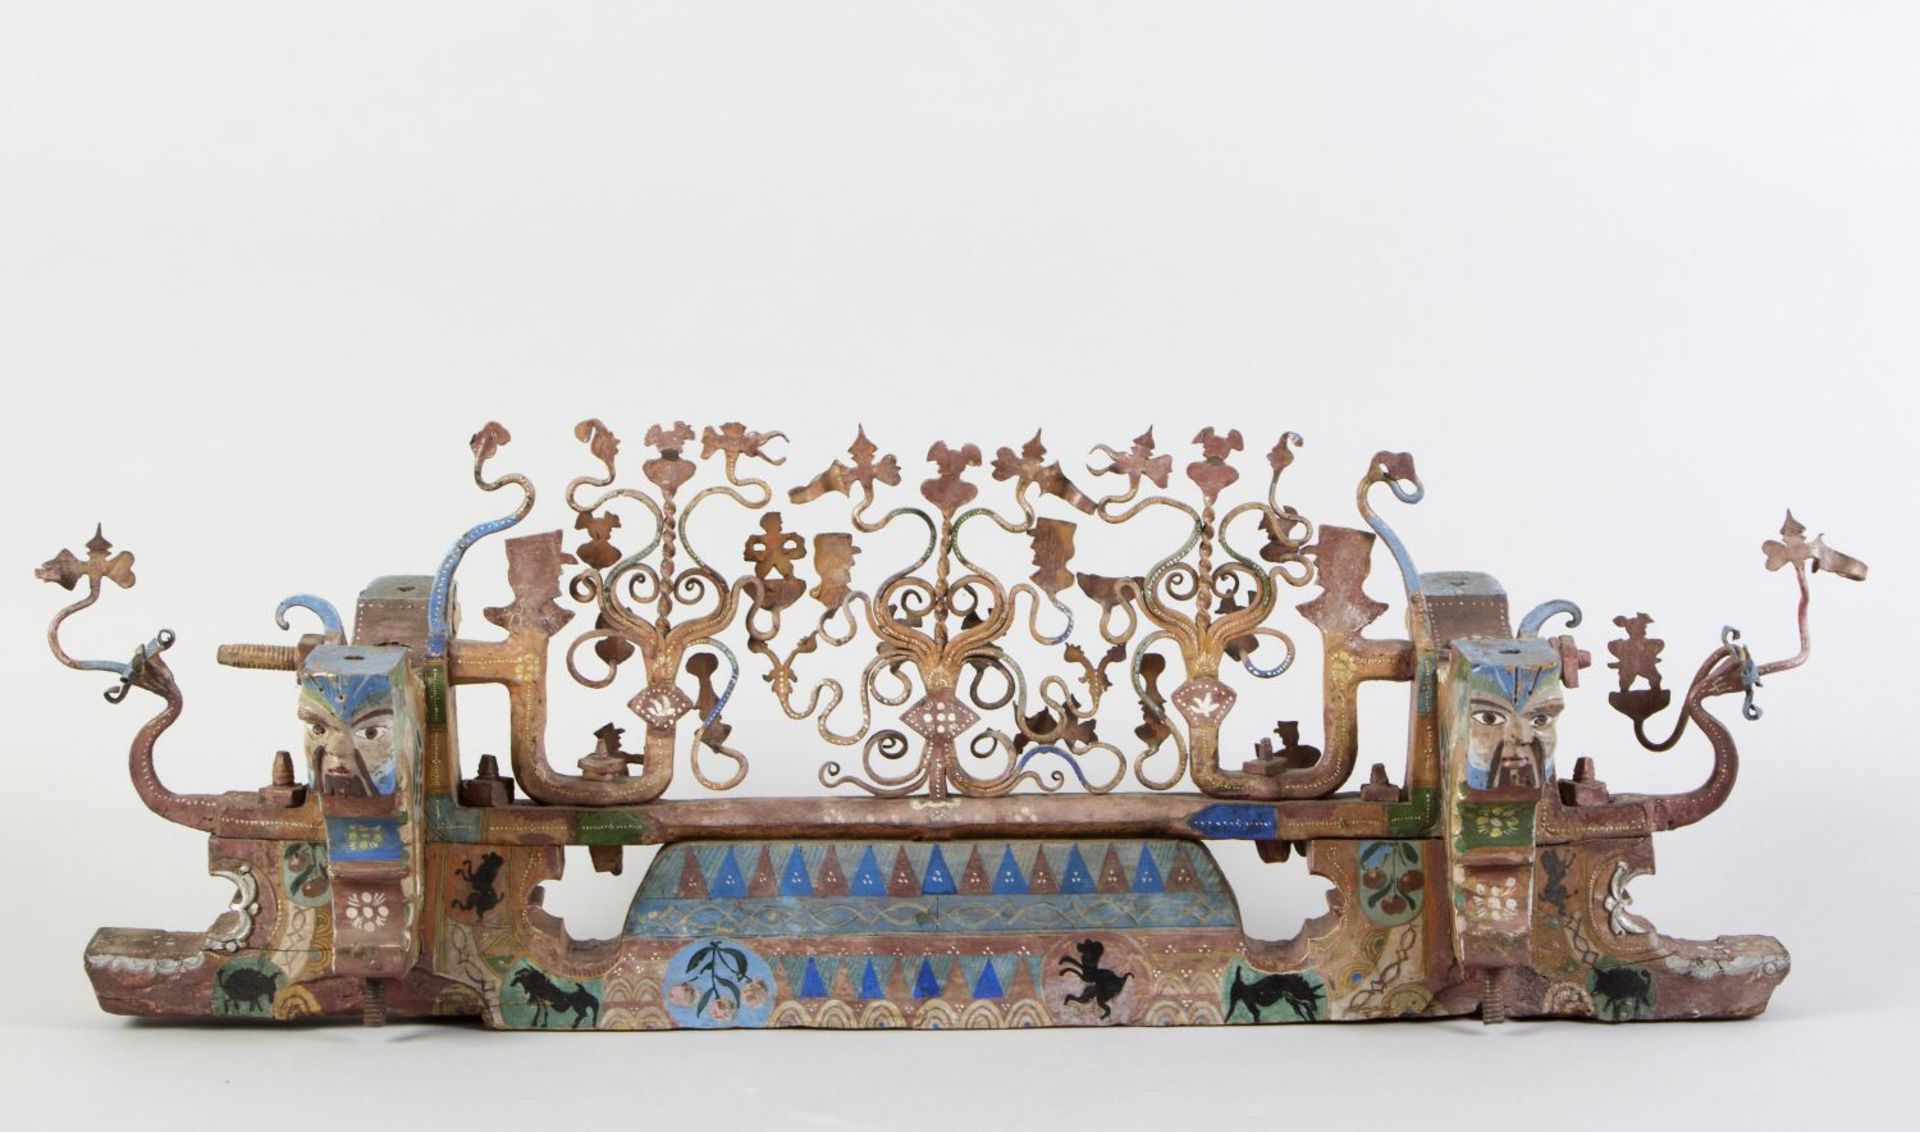 Caretta Achse eines sizilianischen Eselkarrens. Holz mit Schmiedeeisenschmuck. Farbfassung. 19. Jh.  - Bild 2 aus 2